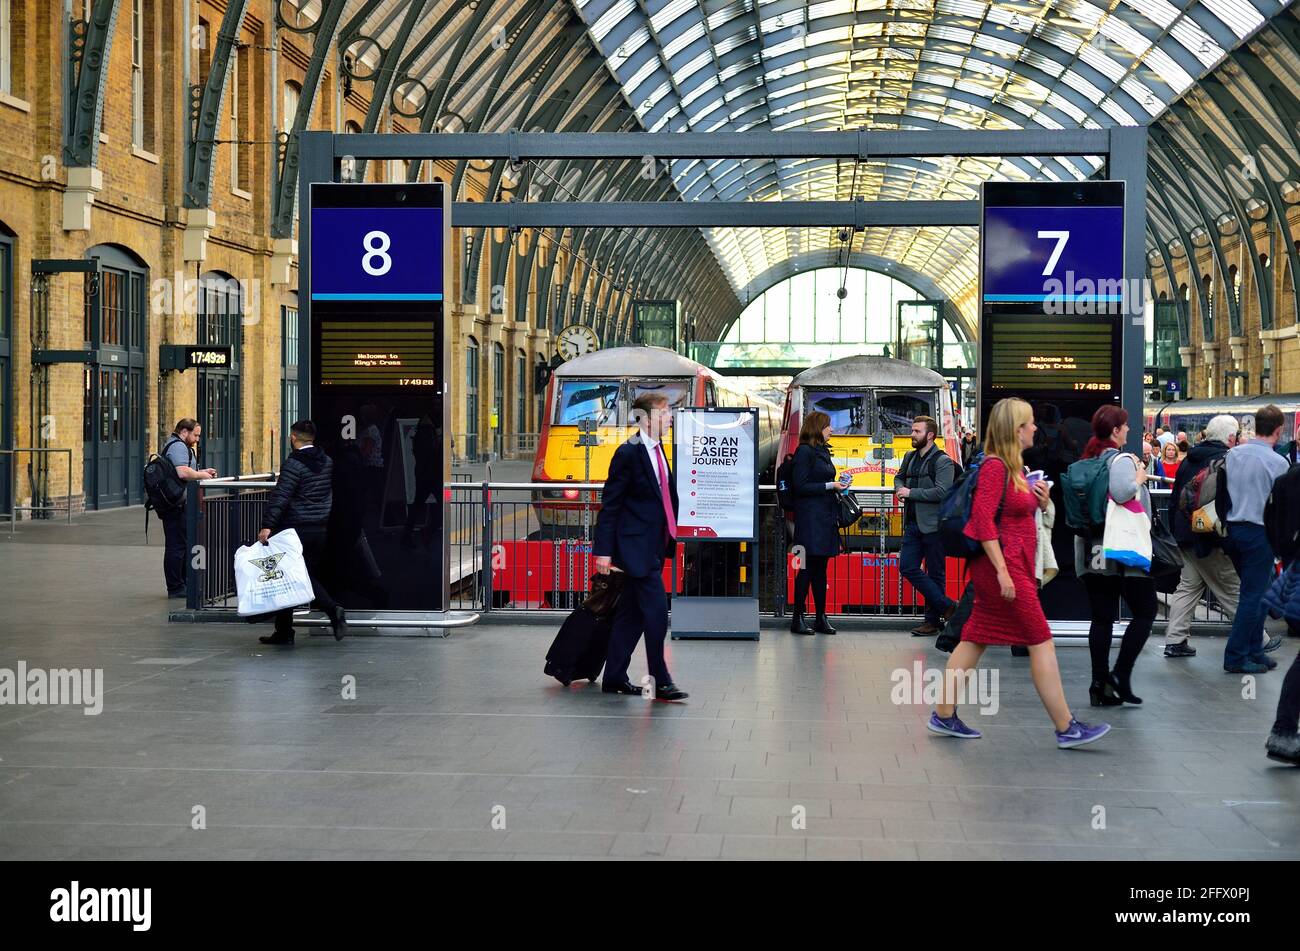 Londra, Inghilterra, Regno Unito. I passeggeri passano i binari presso il London King's Cross, un importante terminal ferroviario sul confine settentrionale del centro di Londra. Foto Stock